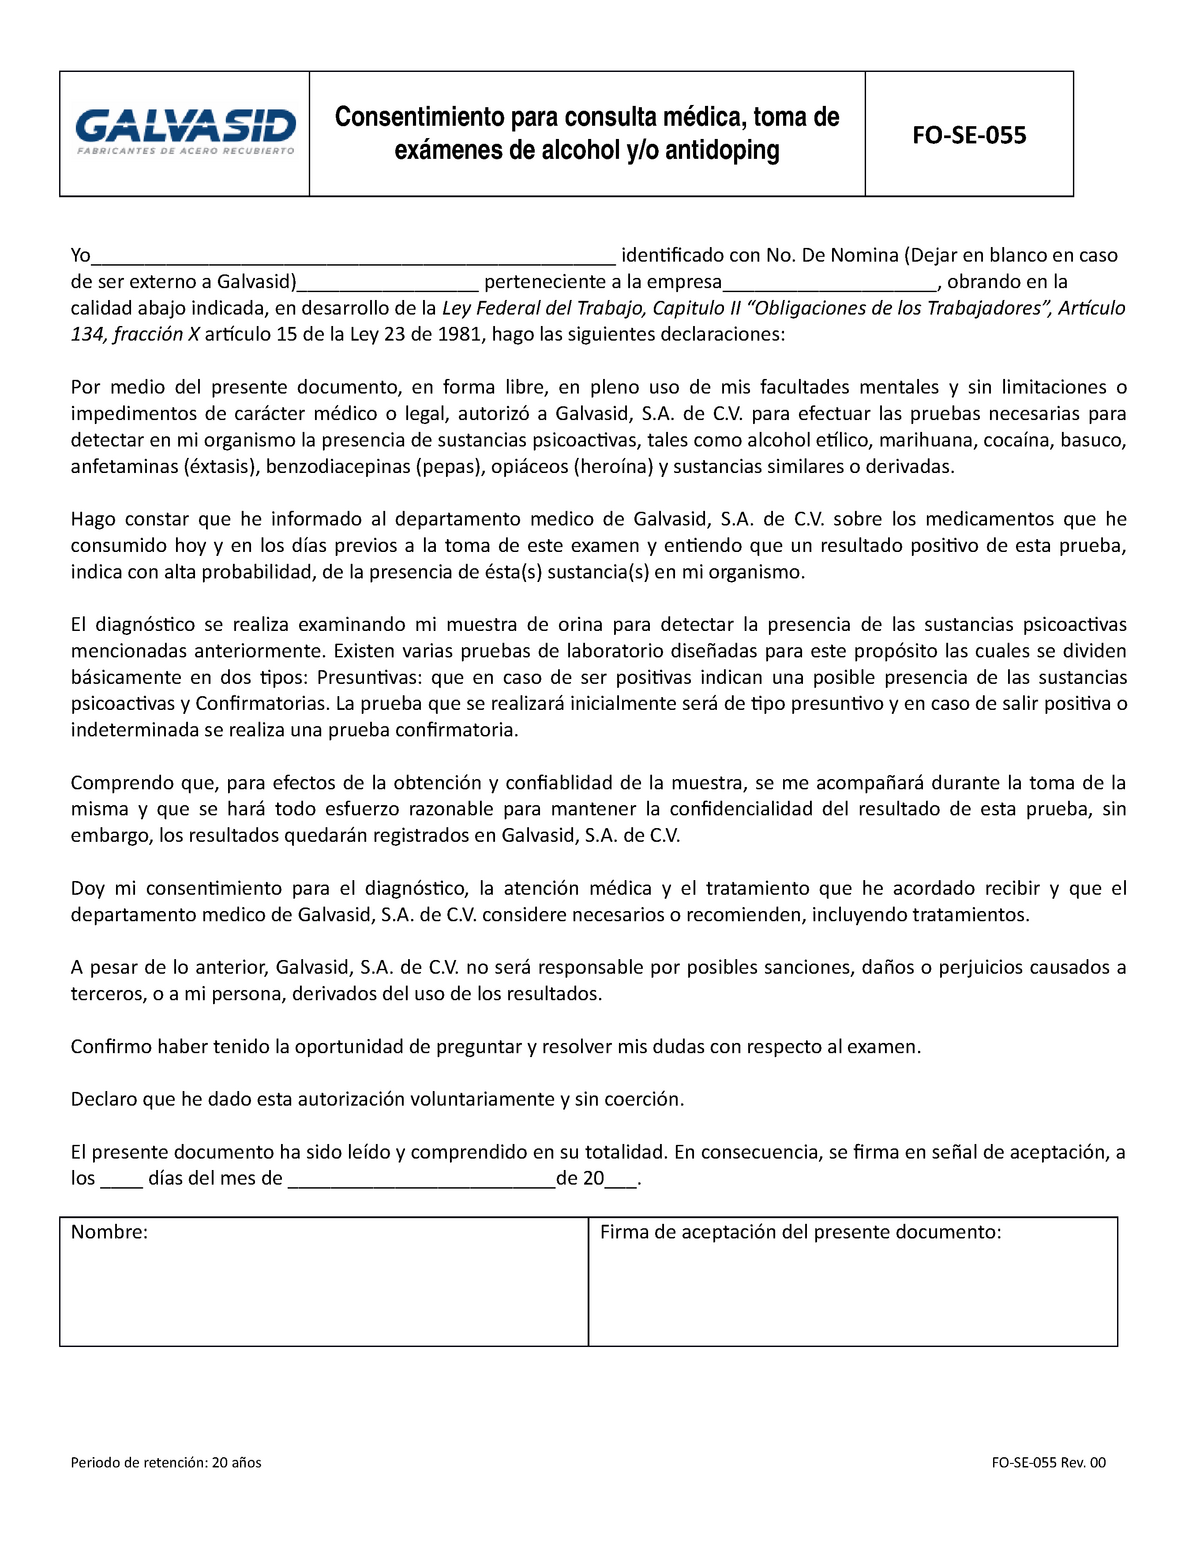 FO-SE-055 REV00 Consentimiento para consulta médica, toma de exámenes de  alcohol - Consentimiento - Studocu